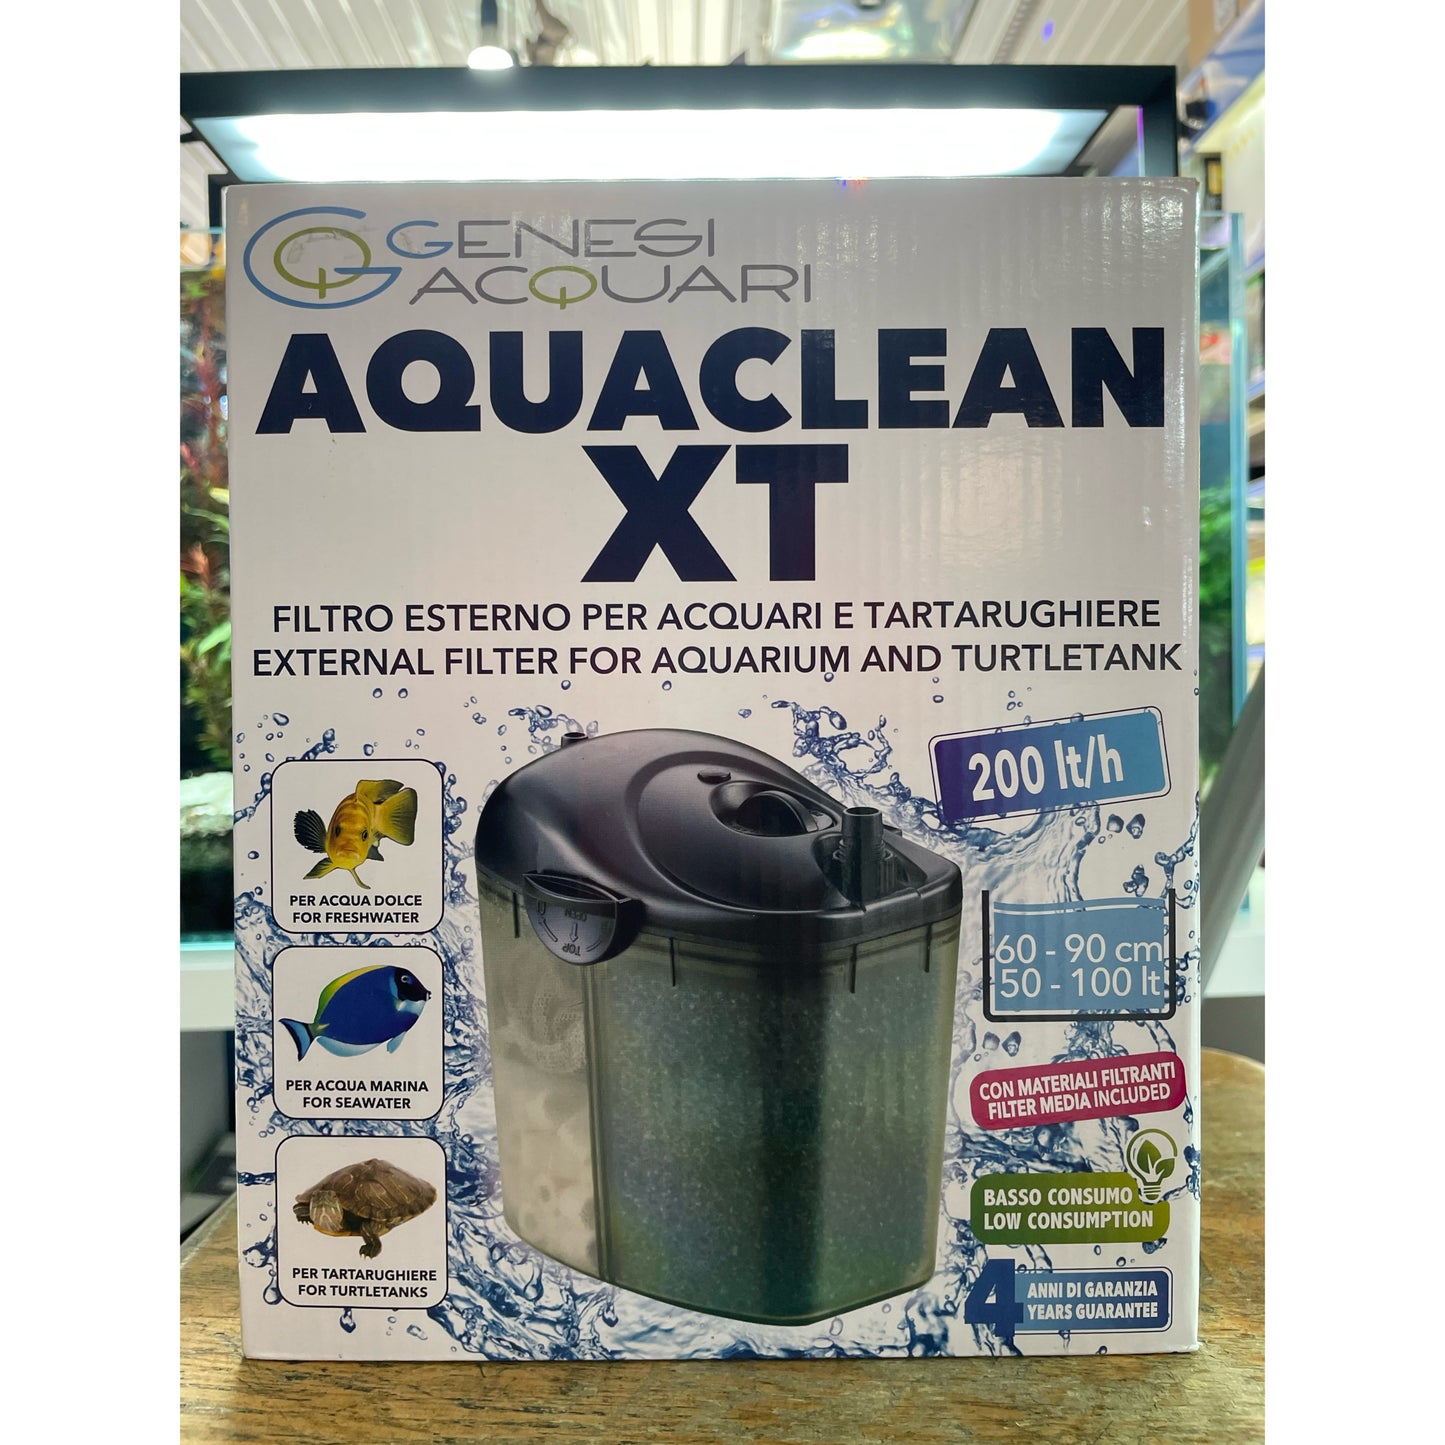 Aquaclean XT